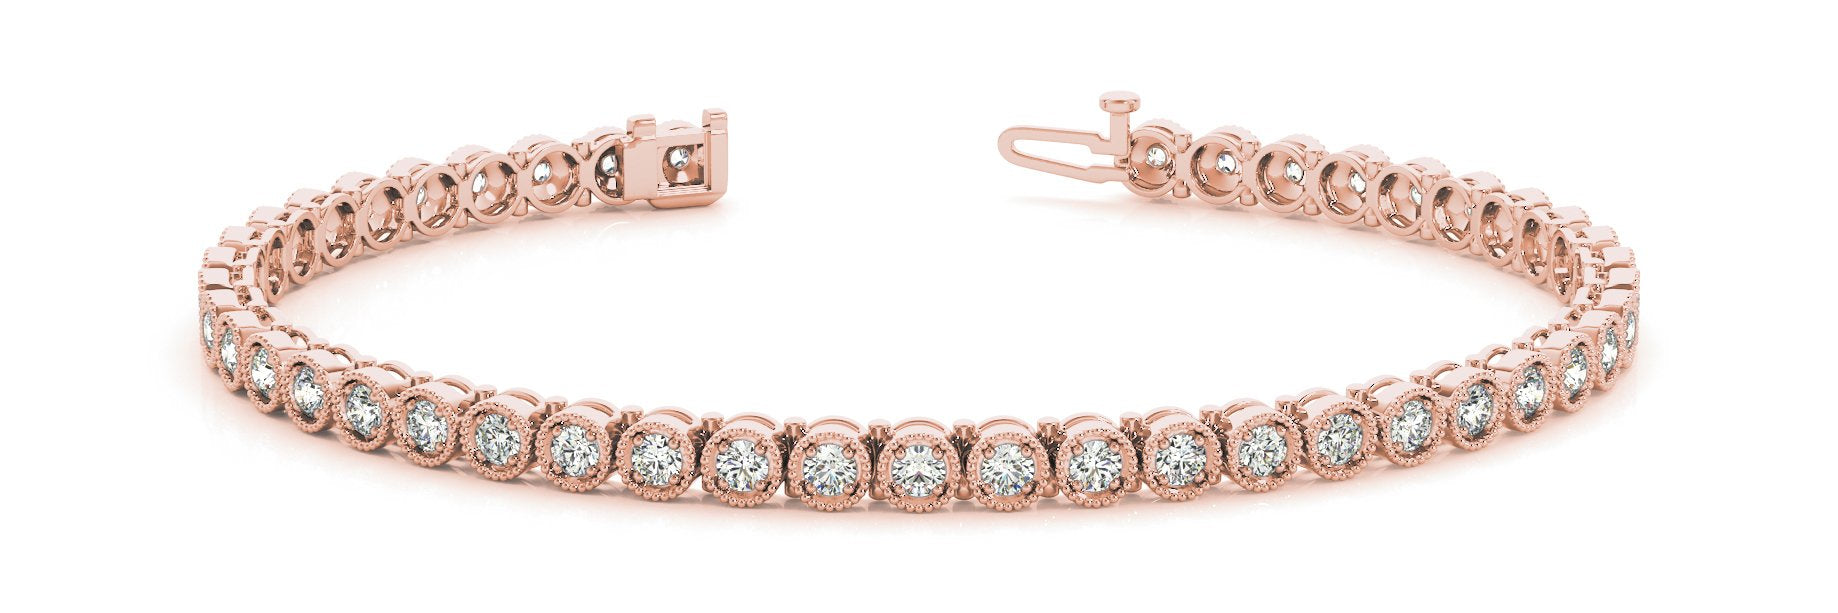 Line Diamond Bracelet 1.08ct tw Ladies - 14kt Gold